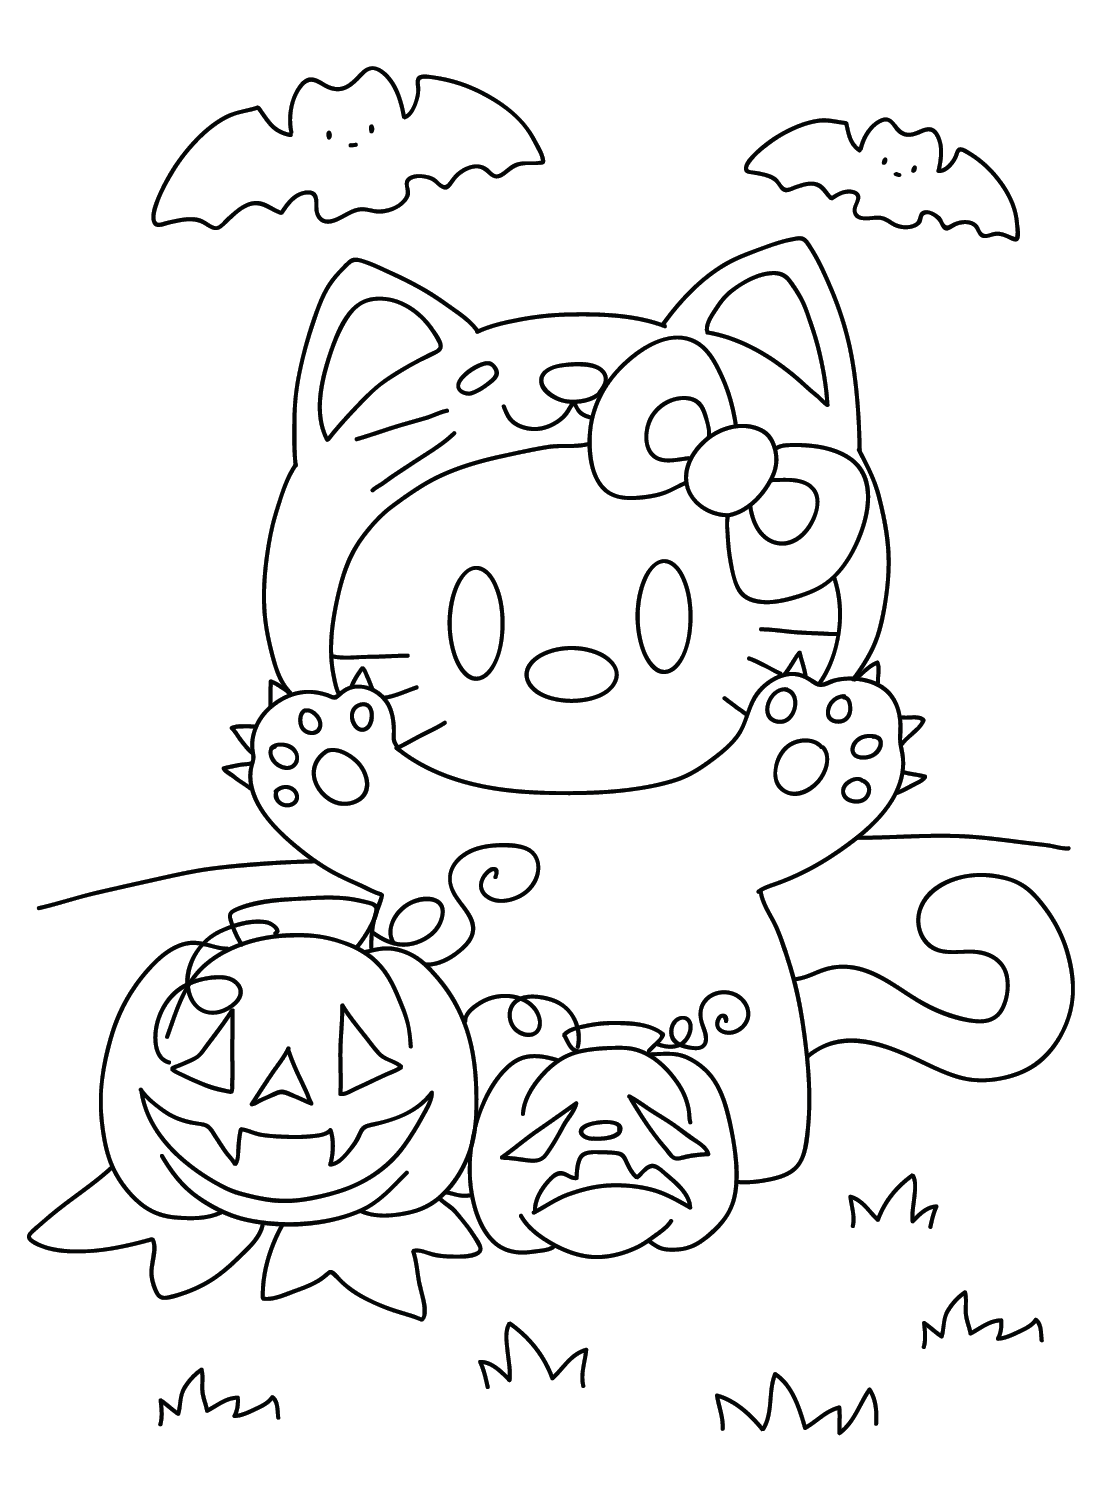 Página para colorear de Hello Kitty Halloween de Happy Halloween